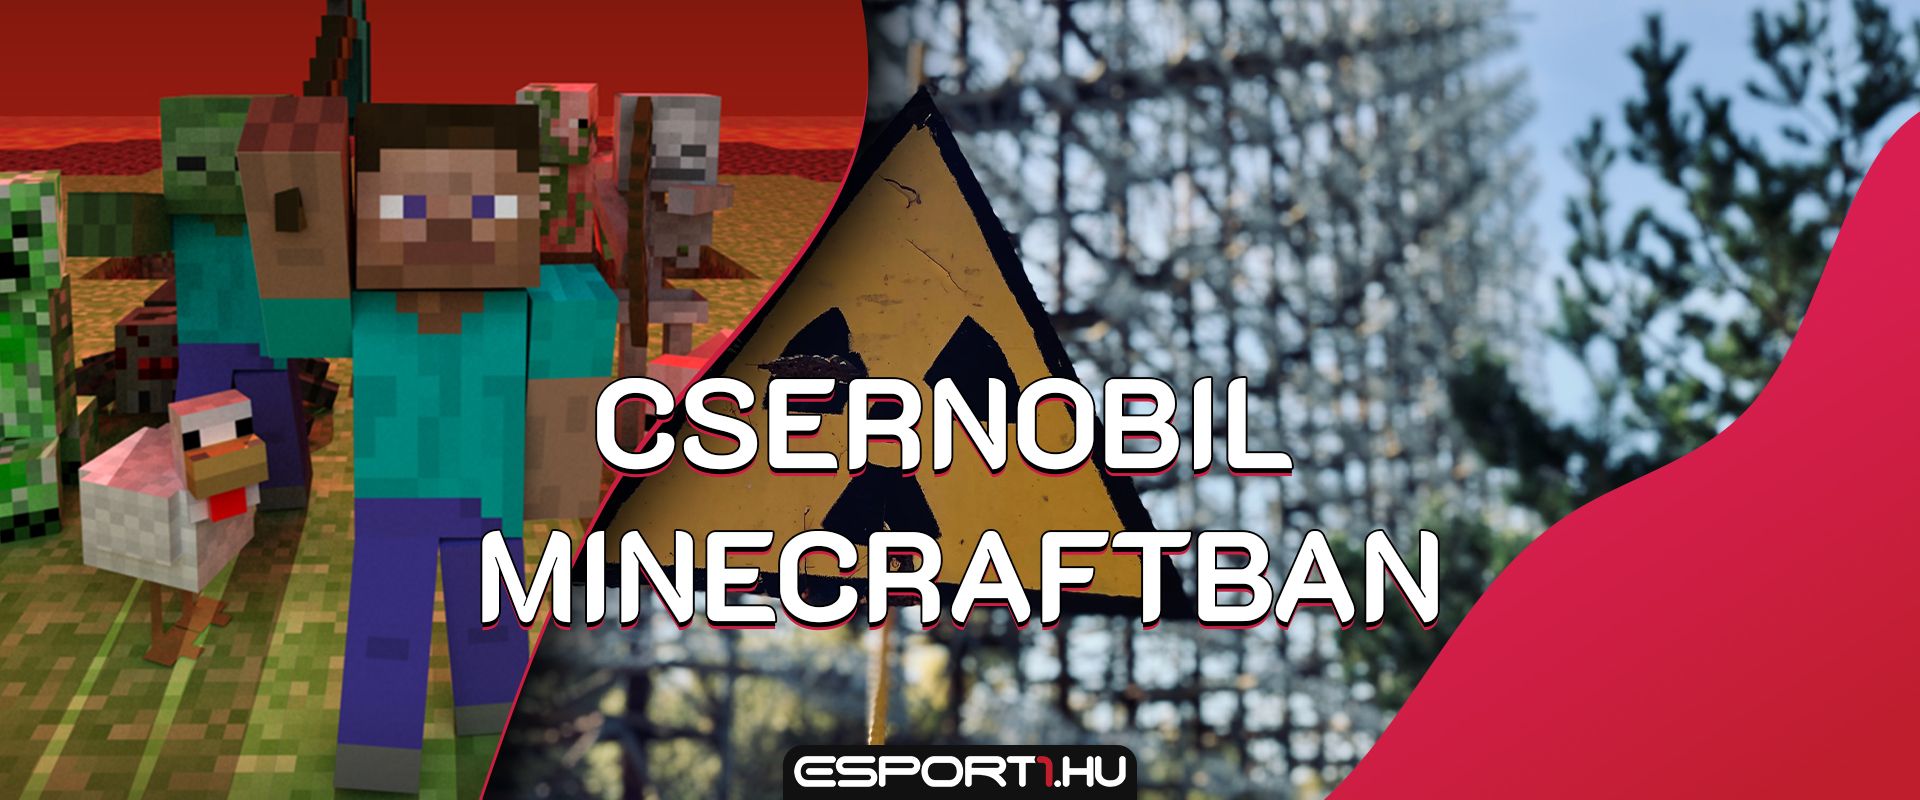 Felépítették Minecraftban a híres-hírhedt csernobili zónát